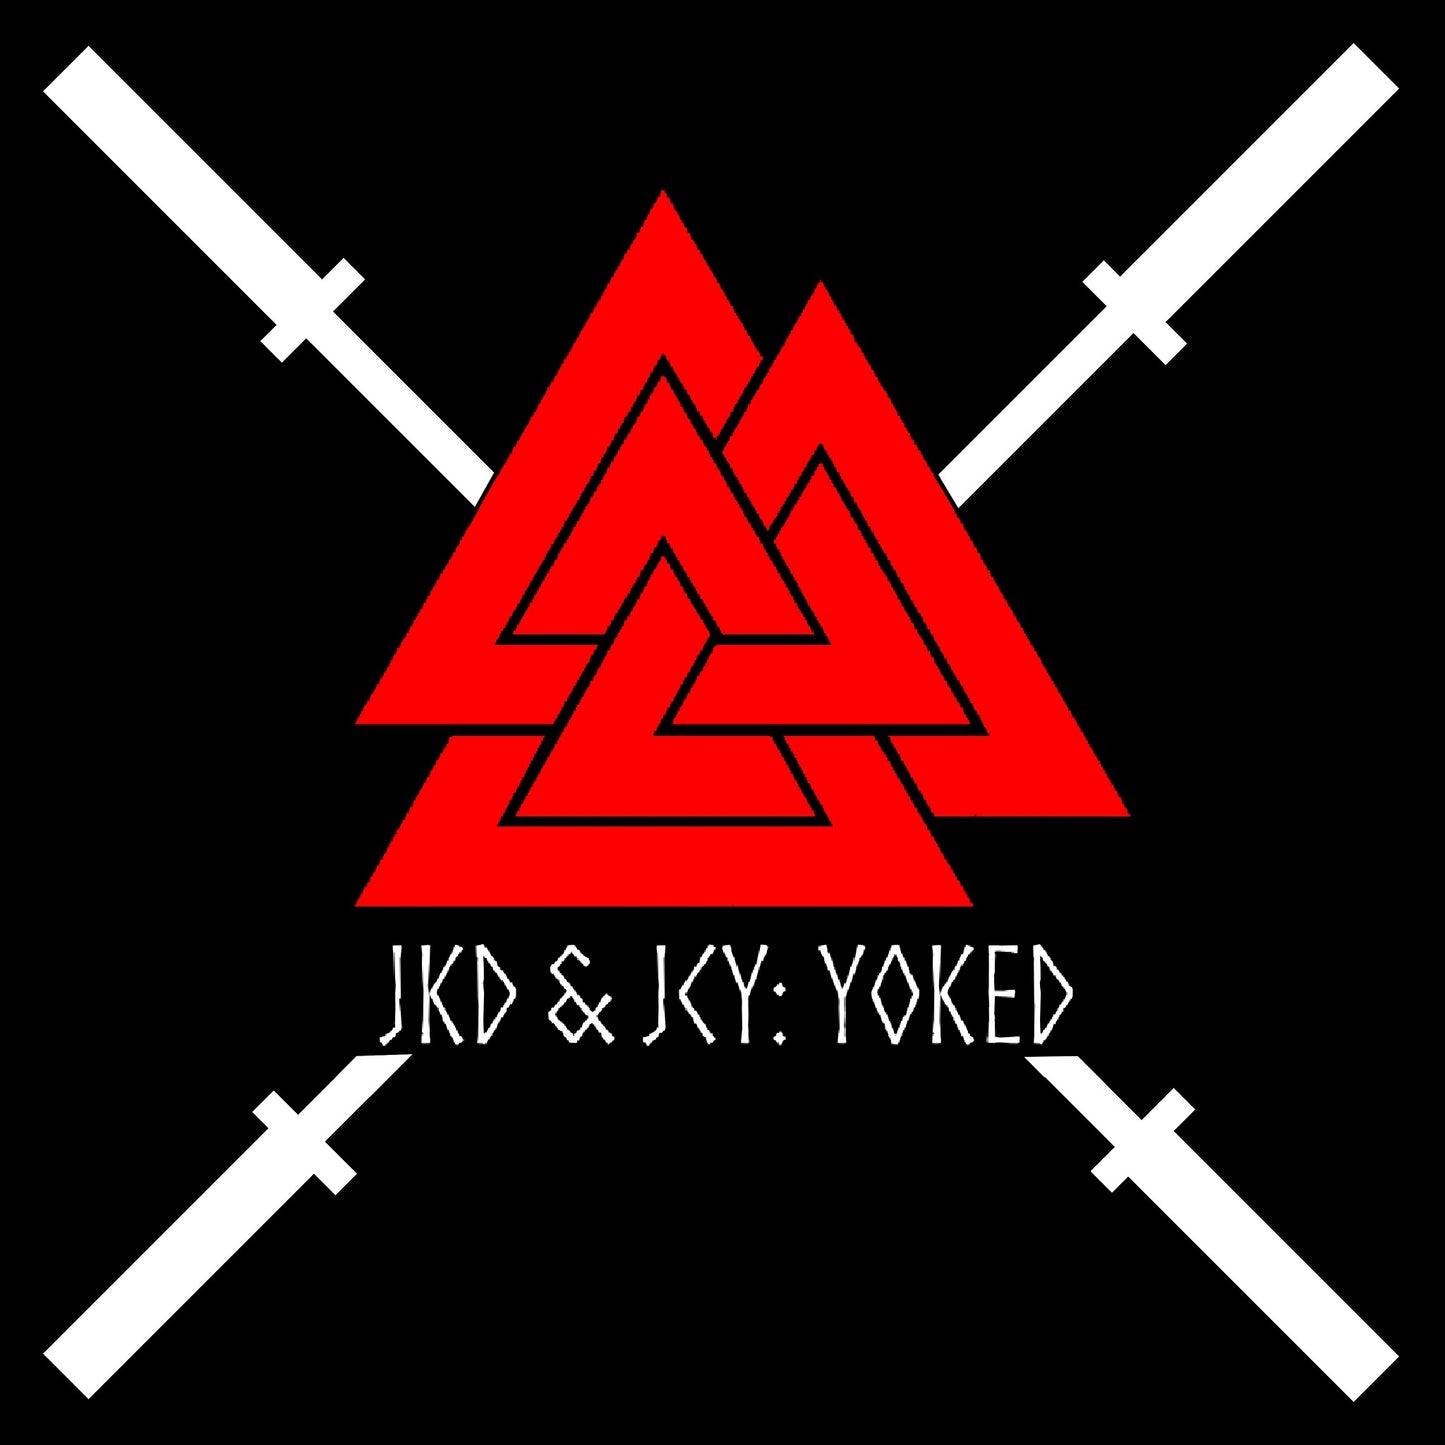 JKD & JCY: YOKED